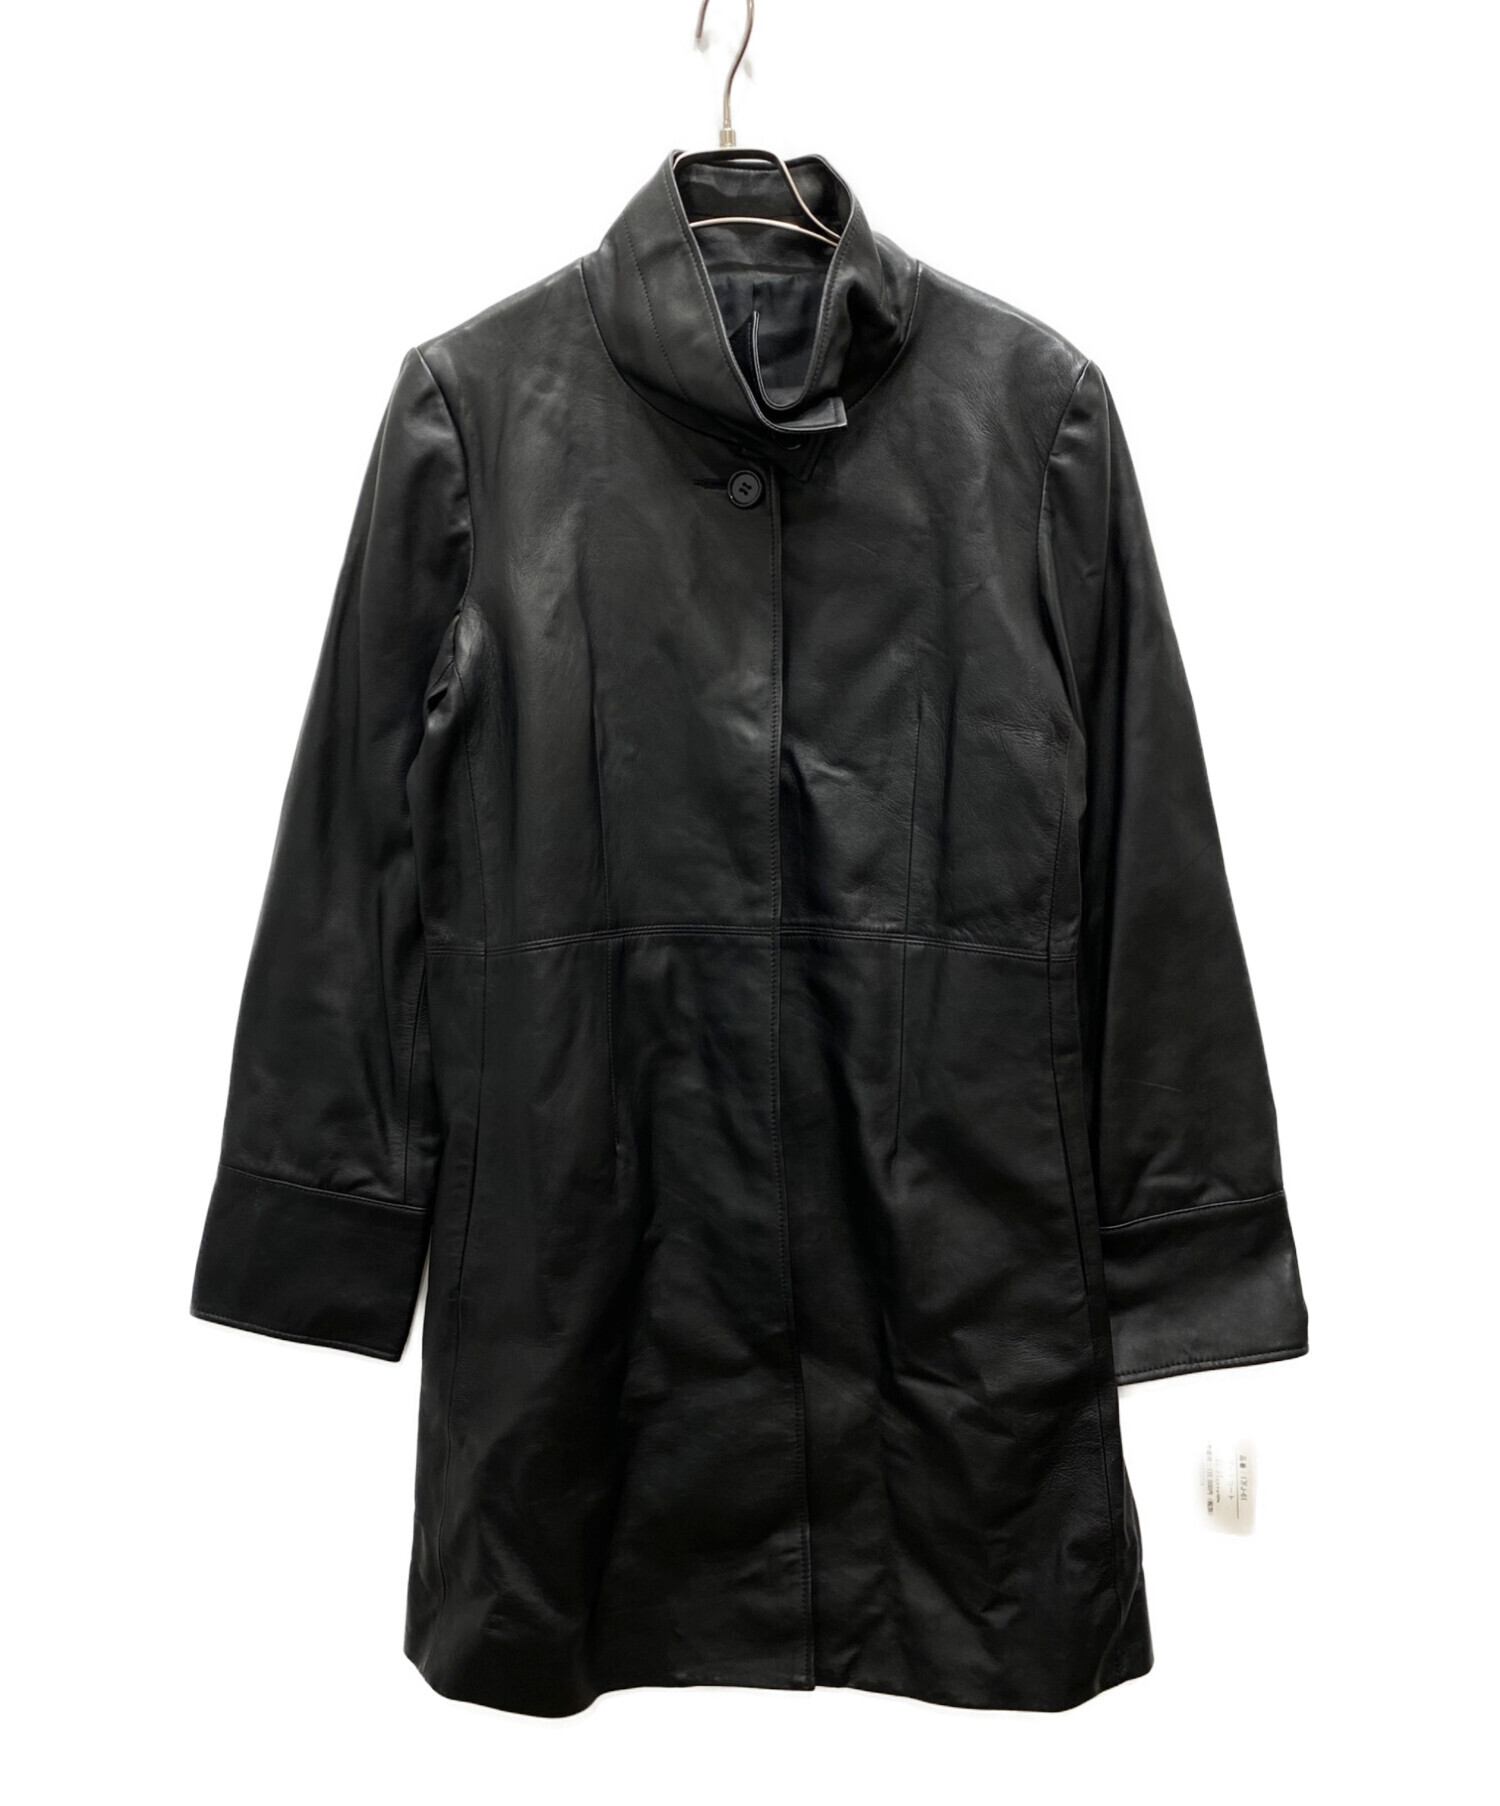 Vesgioia (ベスジョーヤ) ゴートレザースタンドカラーコート ブラック サイズ:L 未使用品